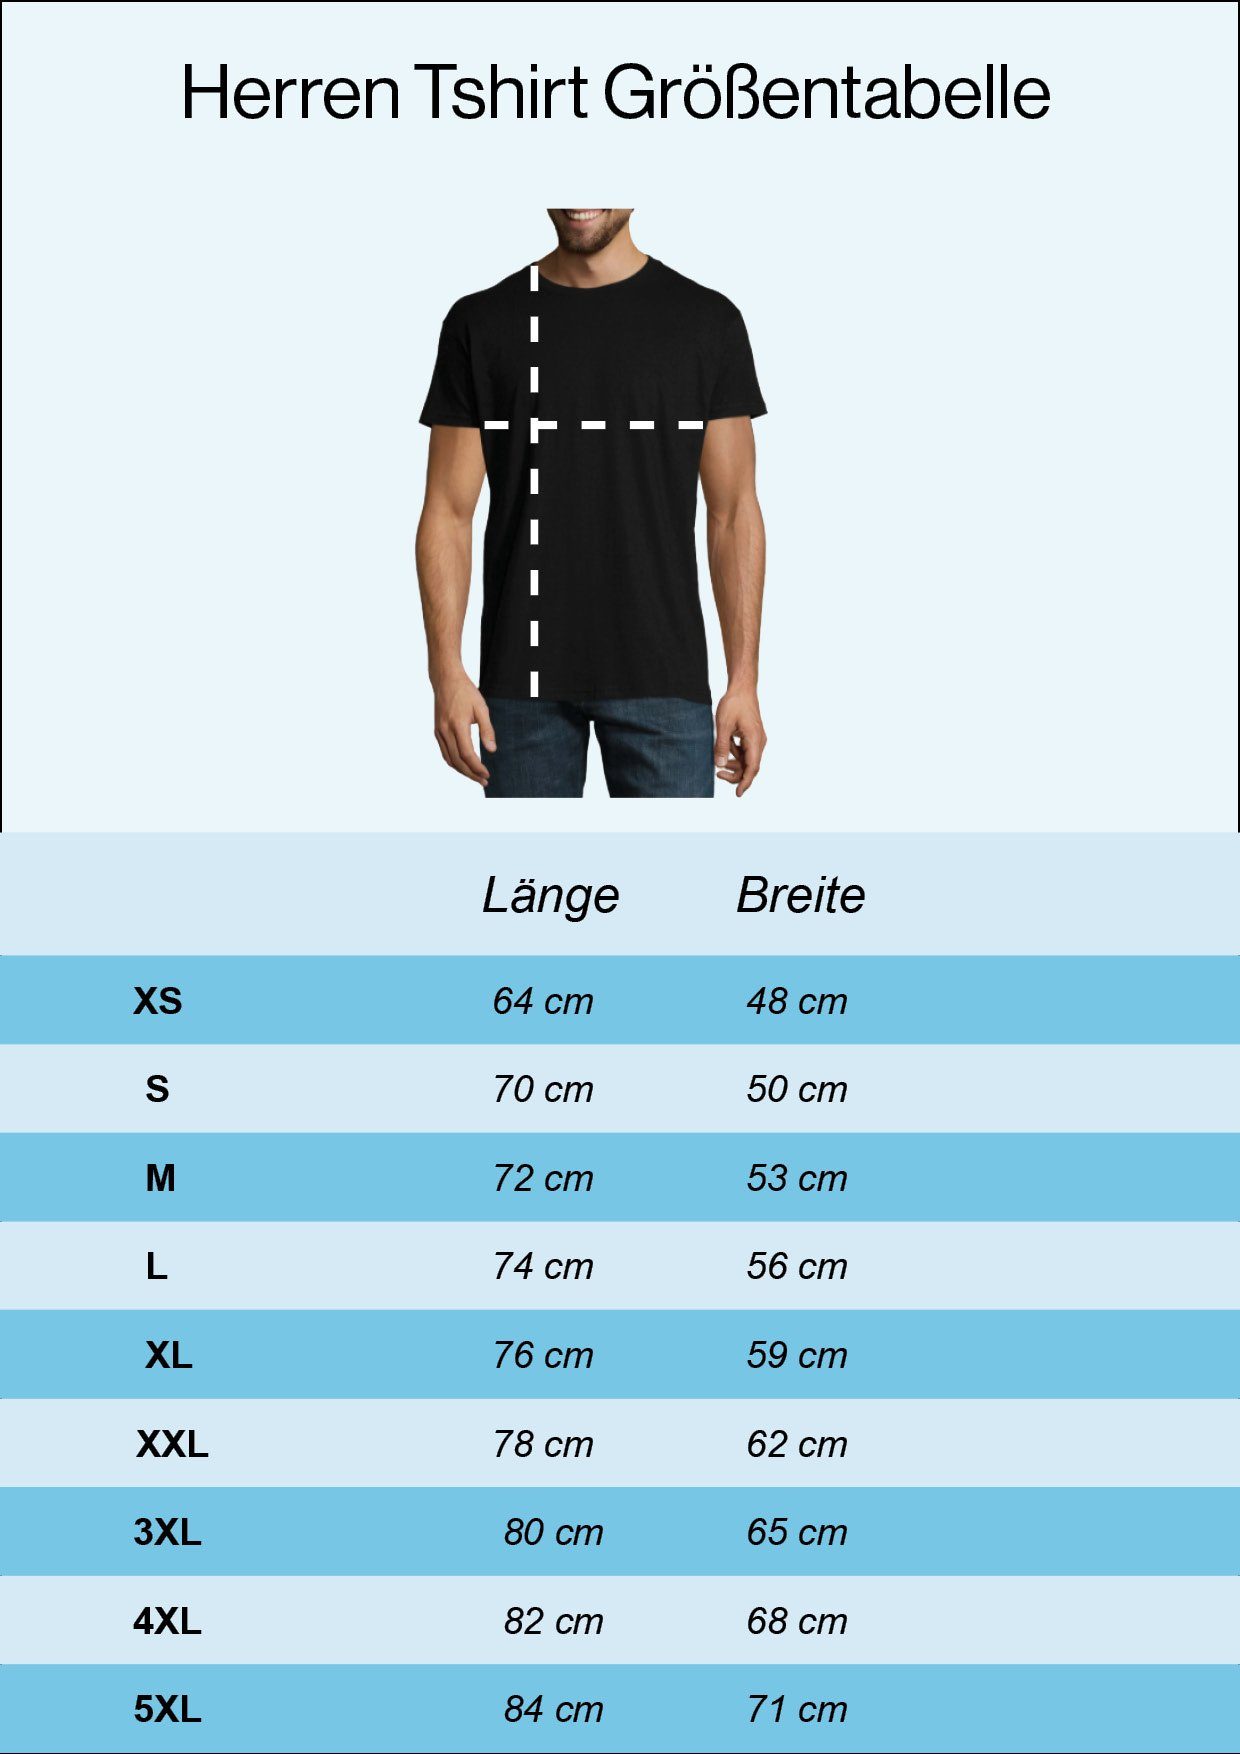 T-Shirt Darum Frontprint Hier" Ich T-Shirt Herren Bier, Bin "Kegeln Youth Grau lustigem mit Und Designz